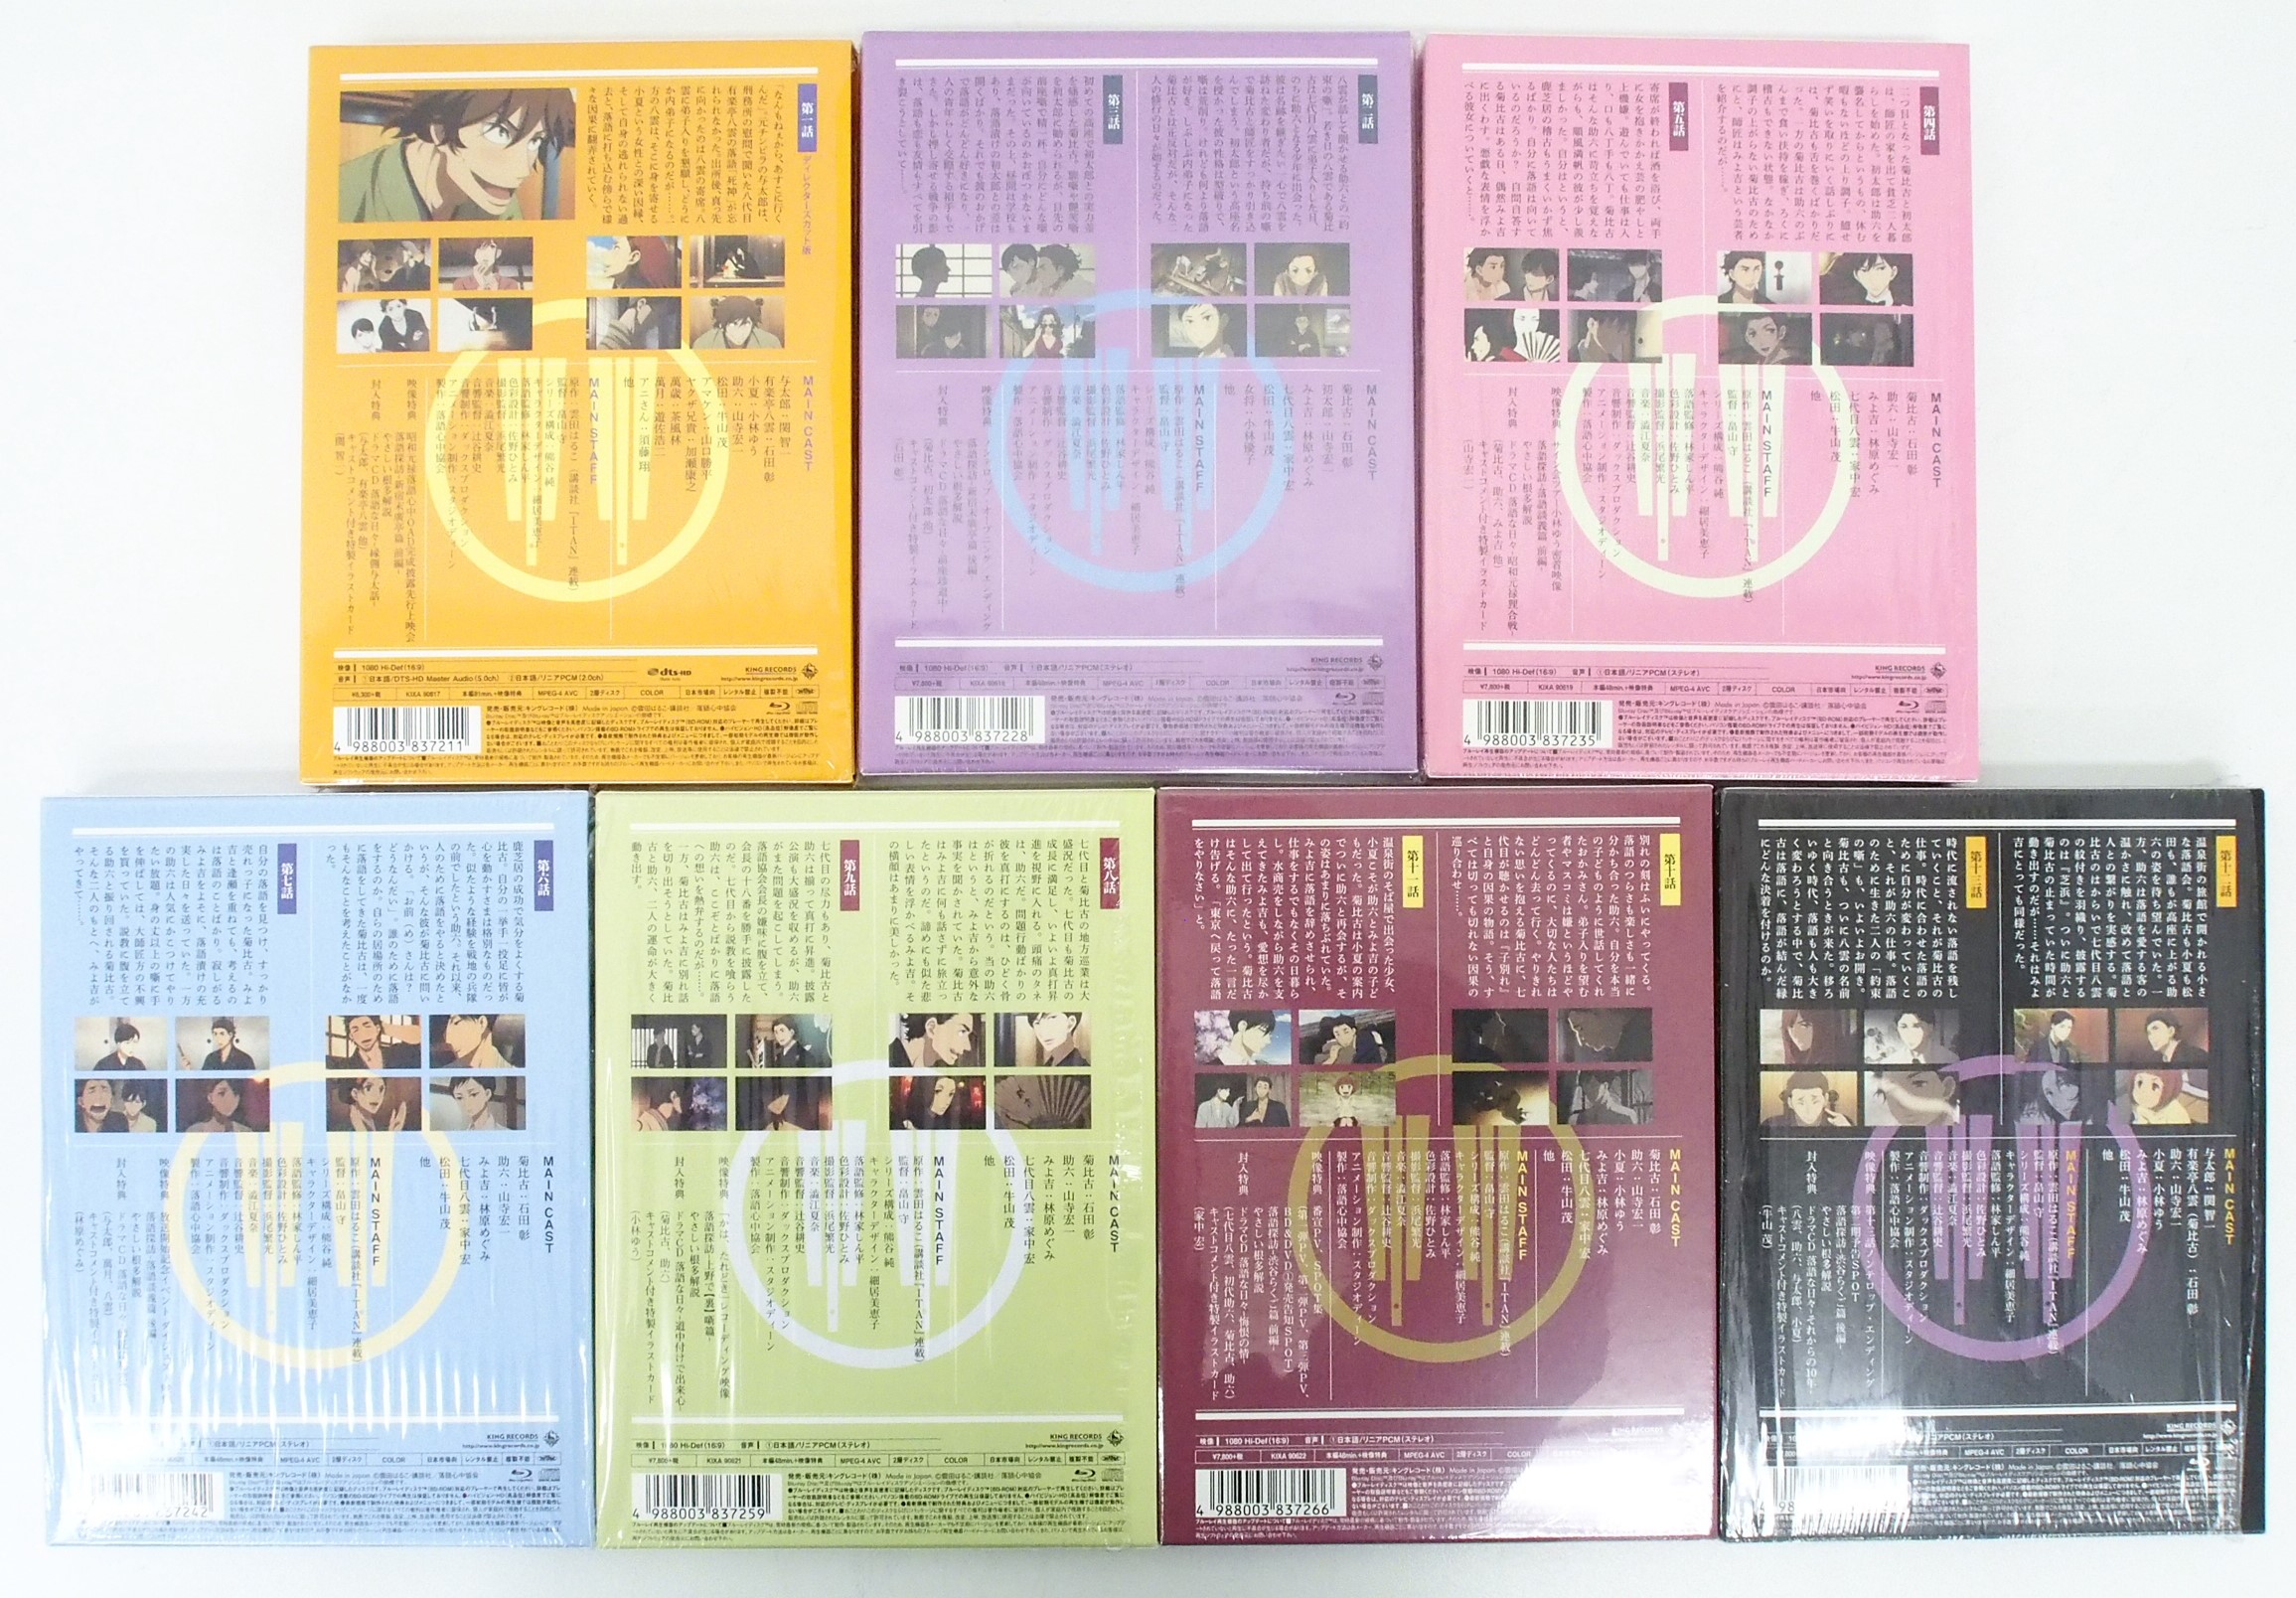 全7巻セット 昭和元禄落語心中 数量限定生産版 Blu-ray 高価買取 